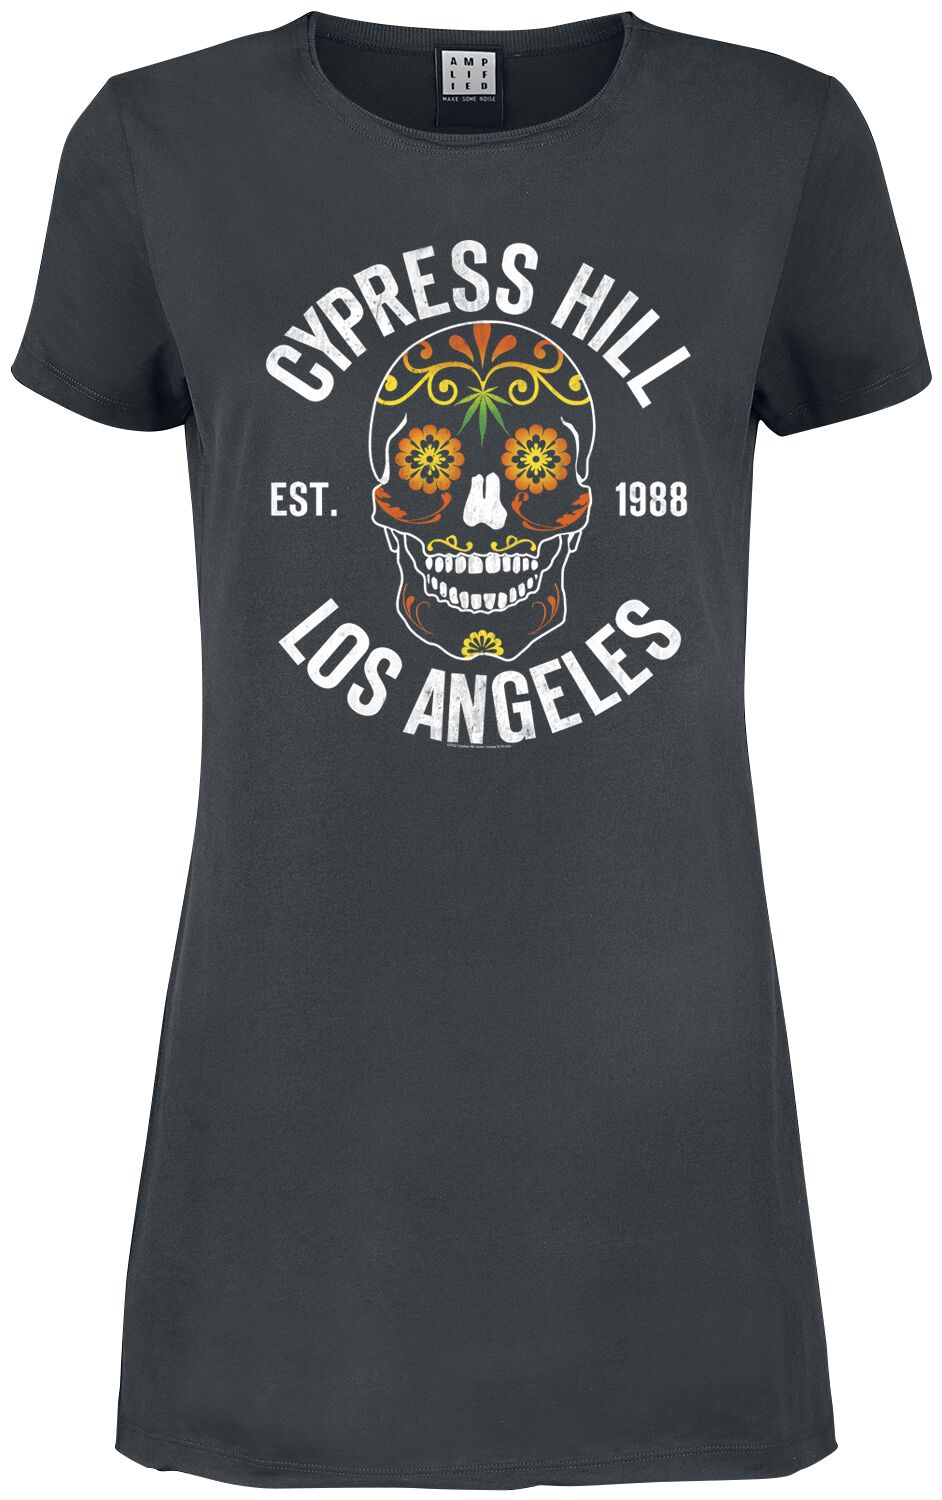 Cypress Hill Kurzes Kleid - Amplified Collection - Floral Skull - XS bis XXL - für Damen - Größe XL - charcoal  - Lizenziertes Merchandise!